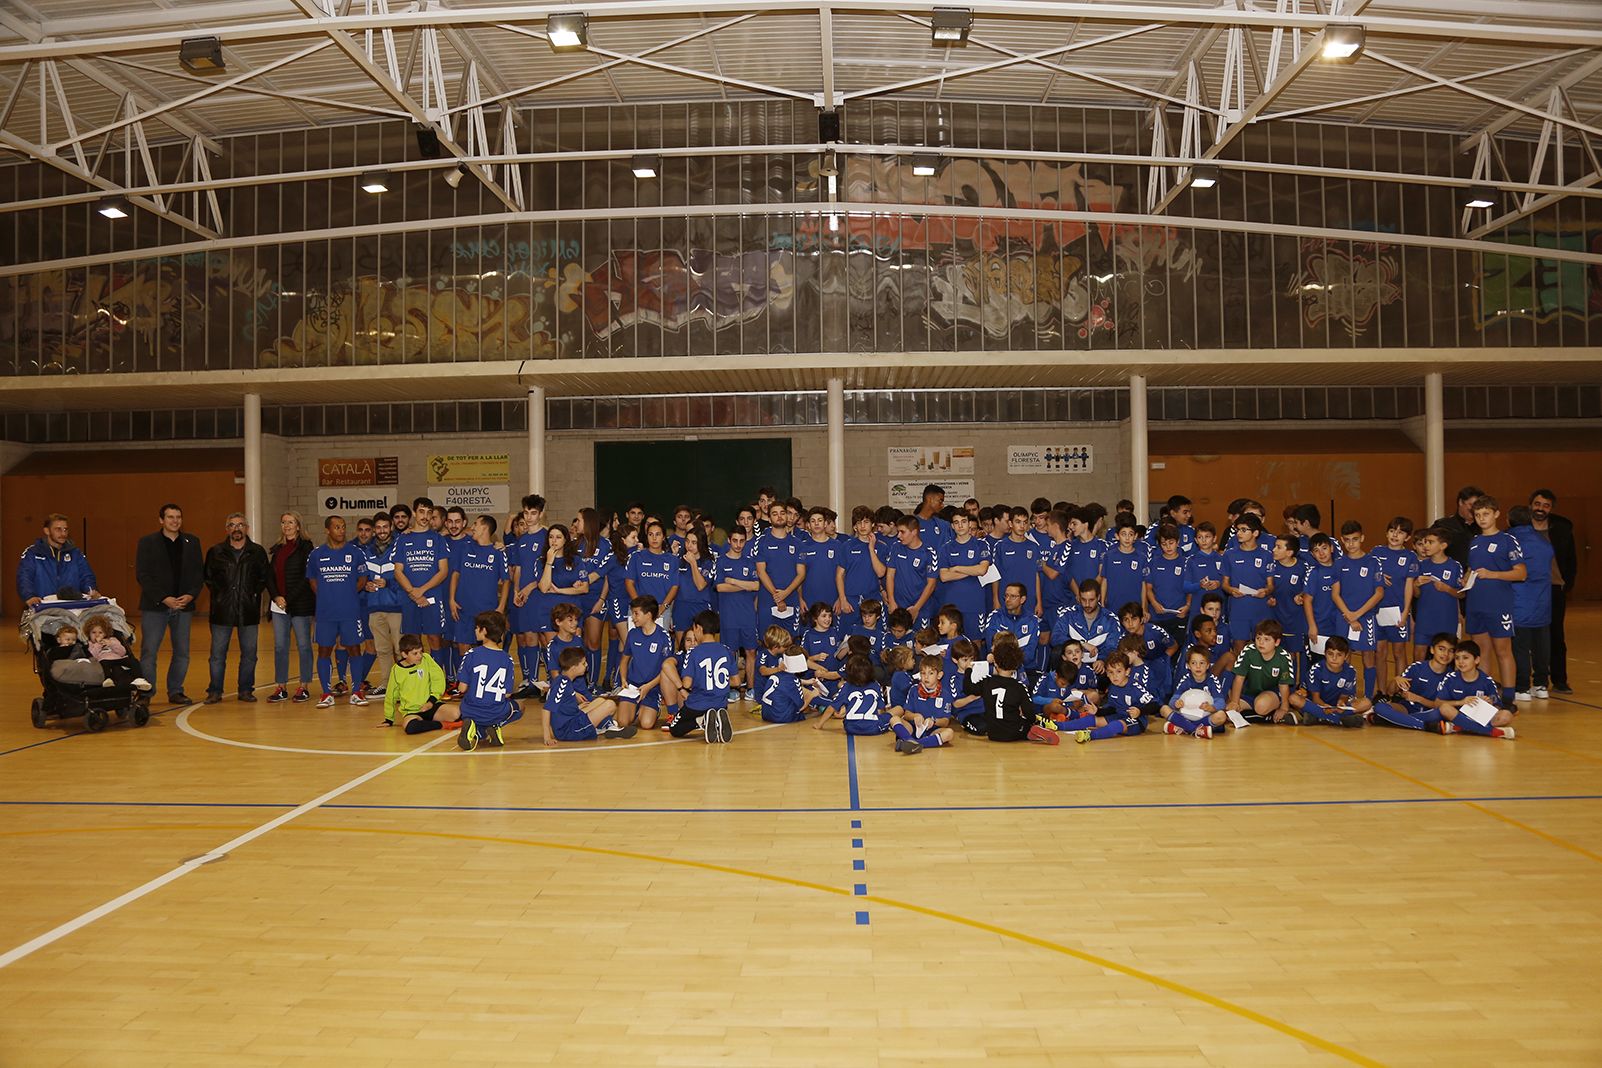 Presentació d'equips del futbol sala Olimpyc la Floresta  2019. FOTO: Anna Bassa